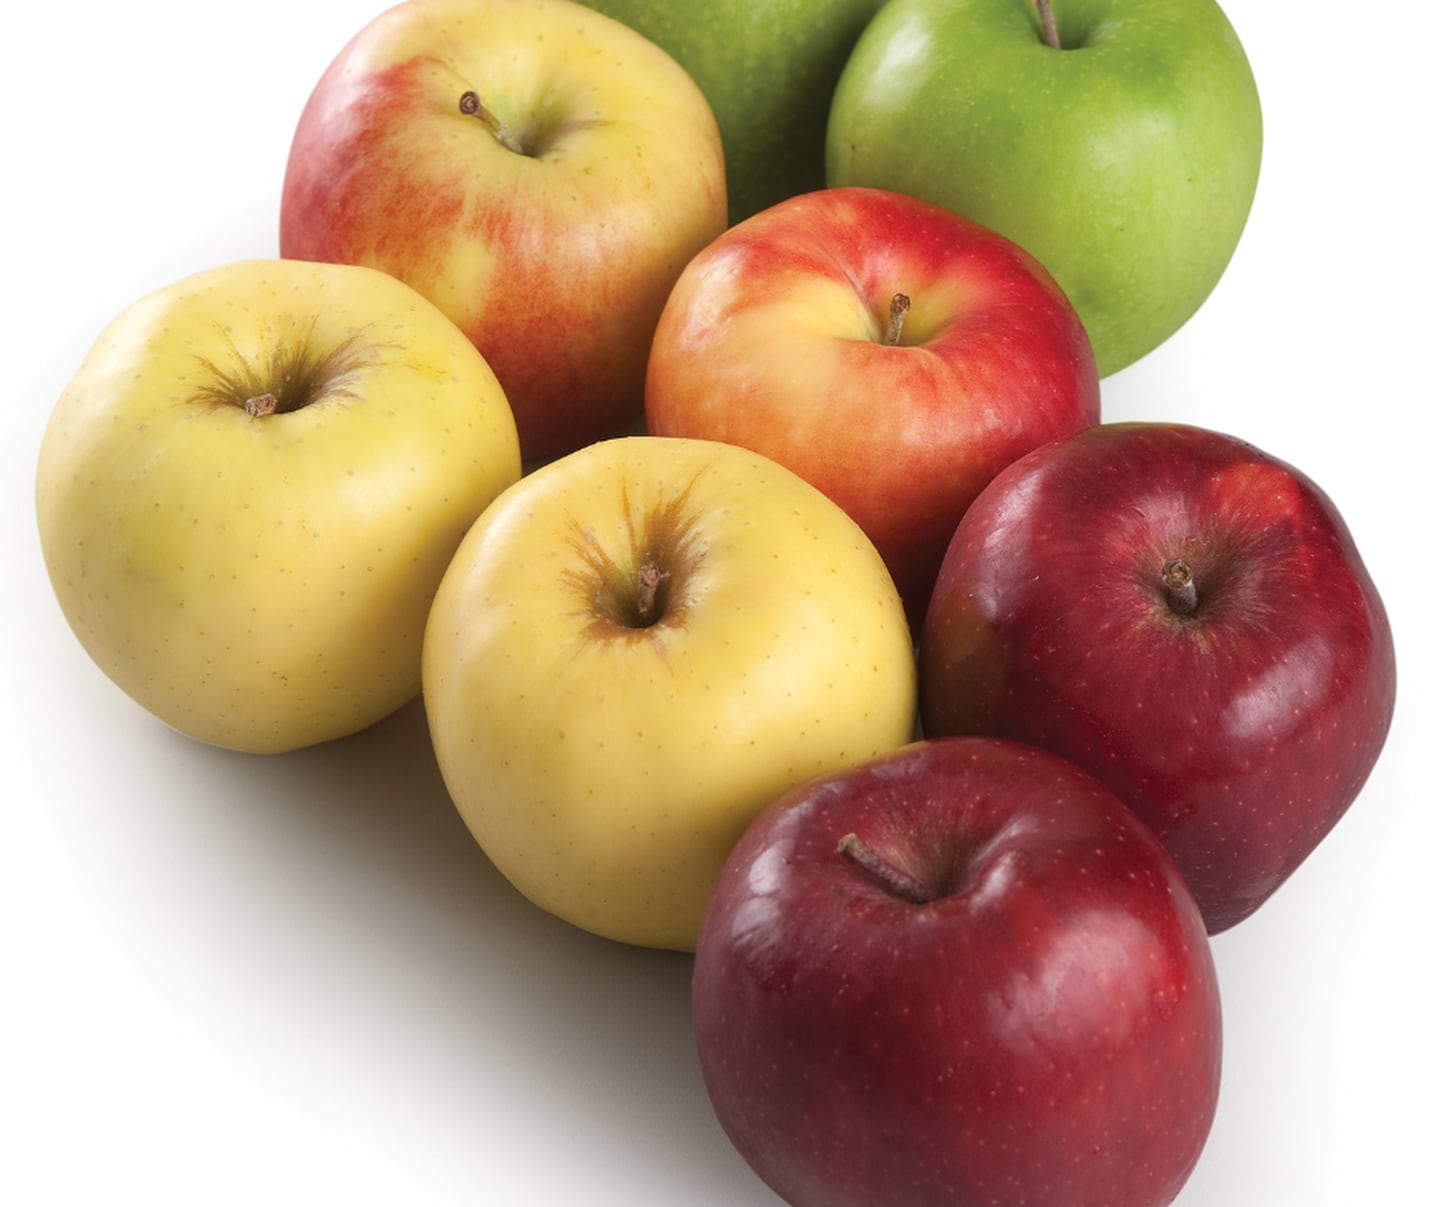 Una manzana mediana contiene 60 kcal
aproximadamente. Es rica en vitaminas E y C y
potasio. Su fibra, llamada pectina, contribuye
a disminuir el colesterol y los triglicéridos en
sangre. Es antiinflamatoria y antidiarreica.
Posee antioxidantes como flavonoides y
quercitina.